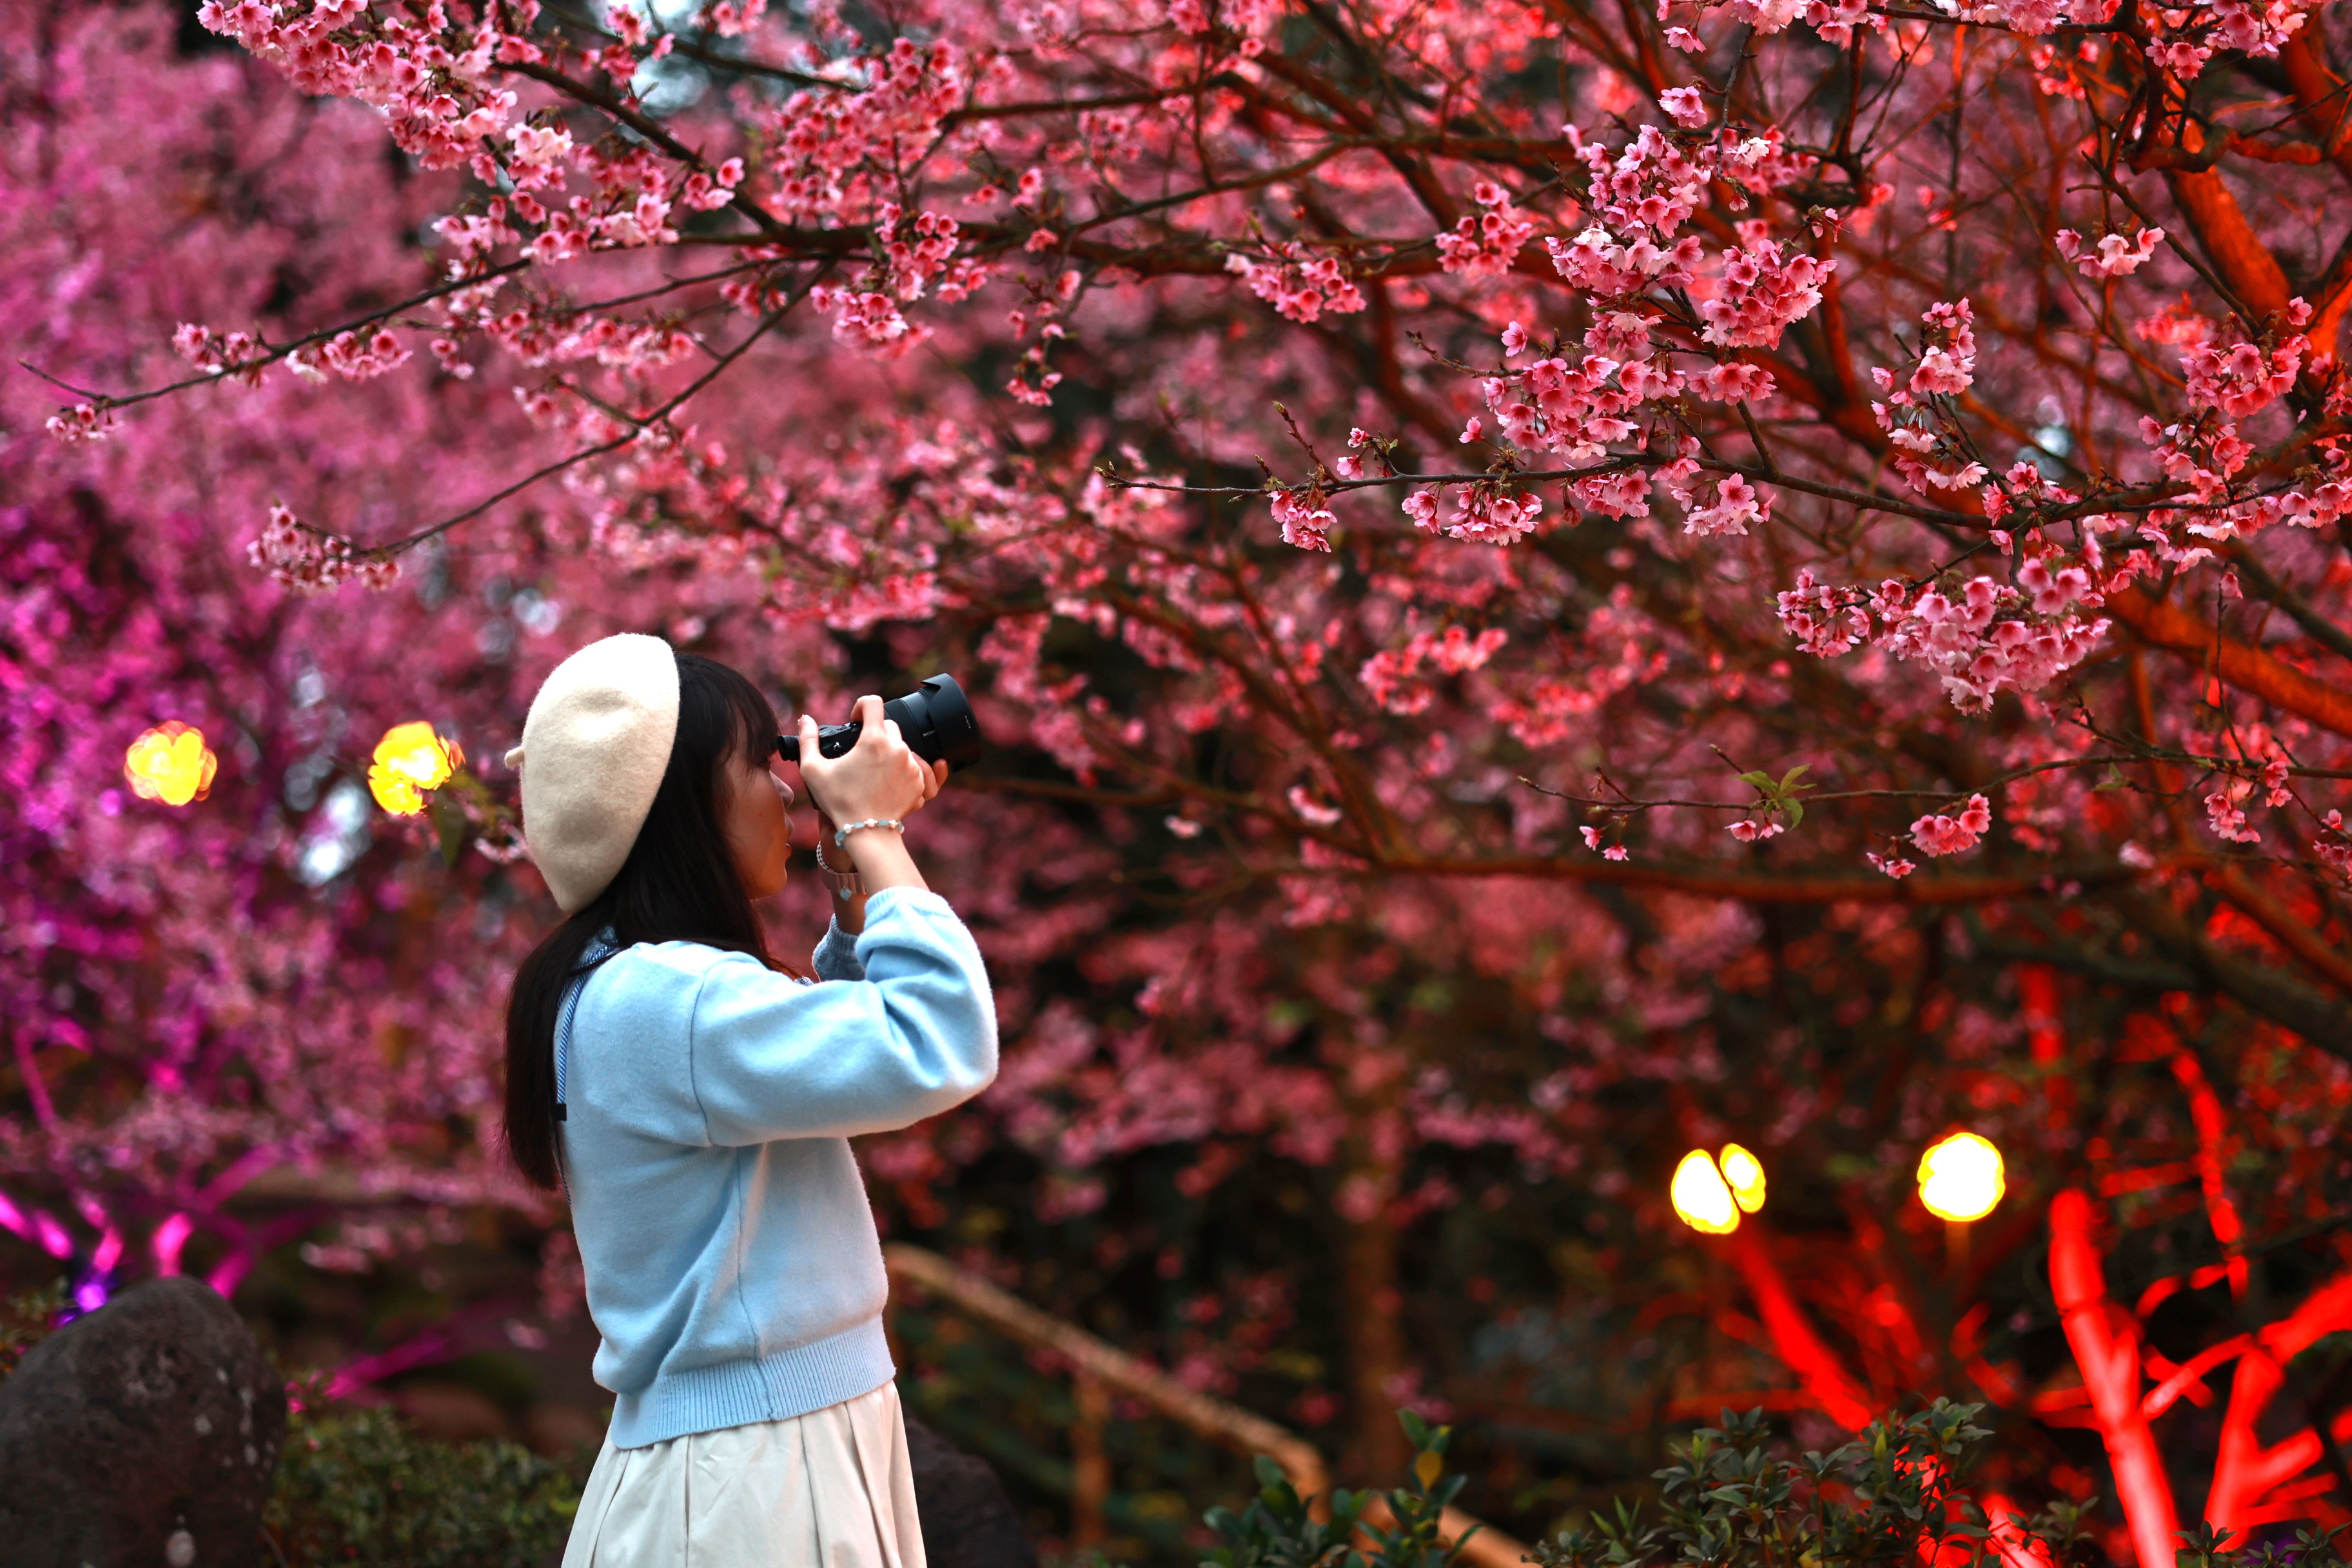 櫻花季活動的夜櫻區 氛圍浪漫 是網美、攝影好手必拍地點